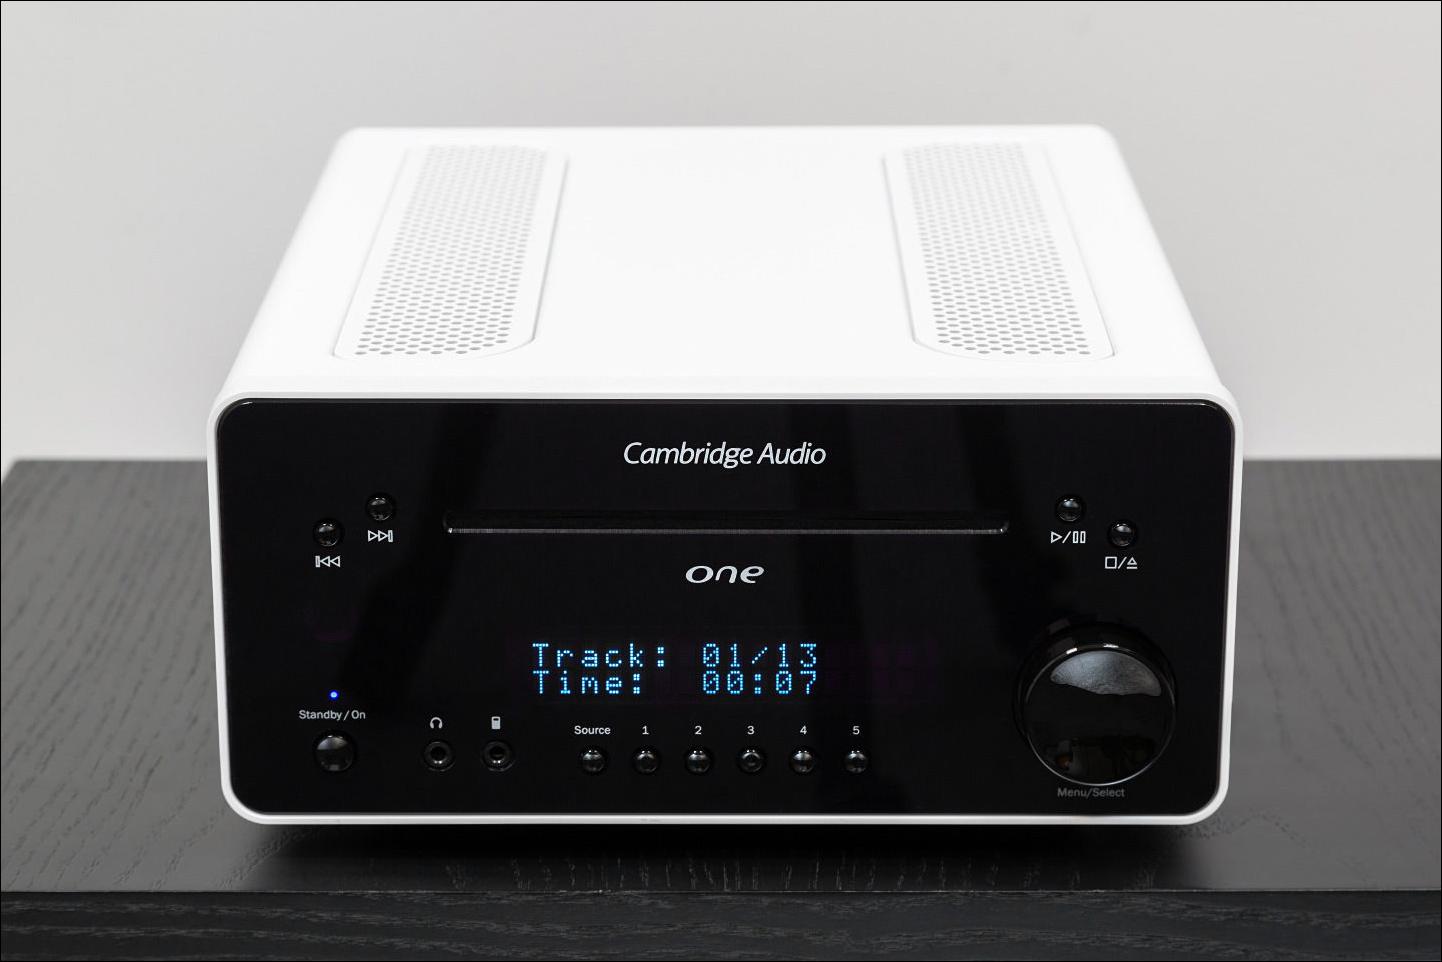 Тест компактной системы Cambridge Audio One: больше, чем кажется